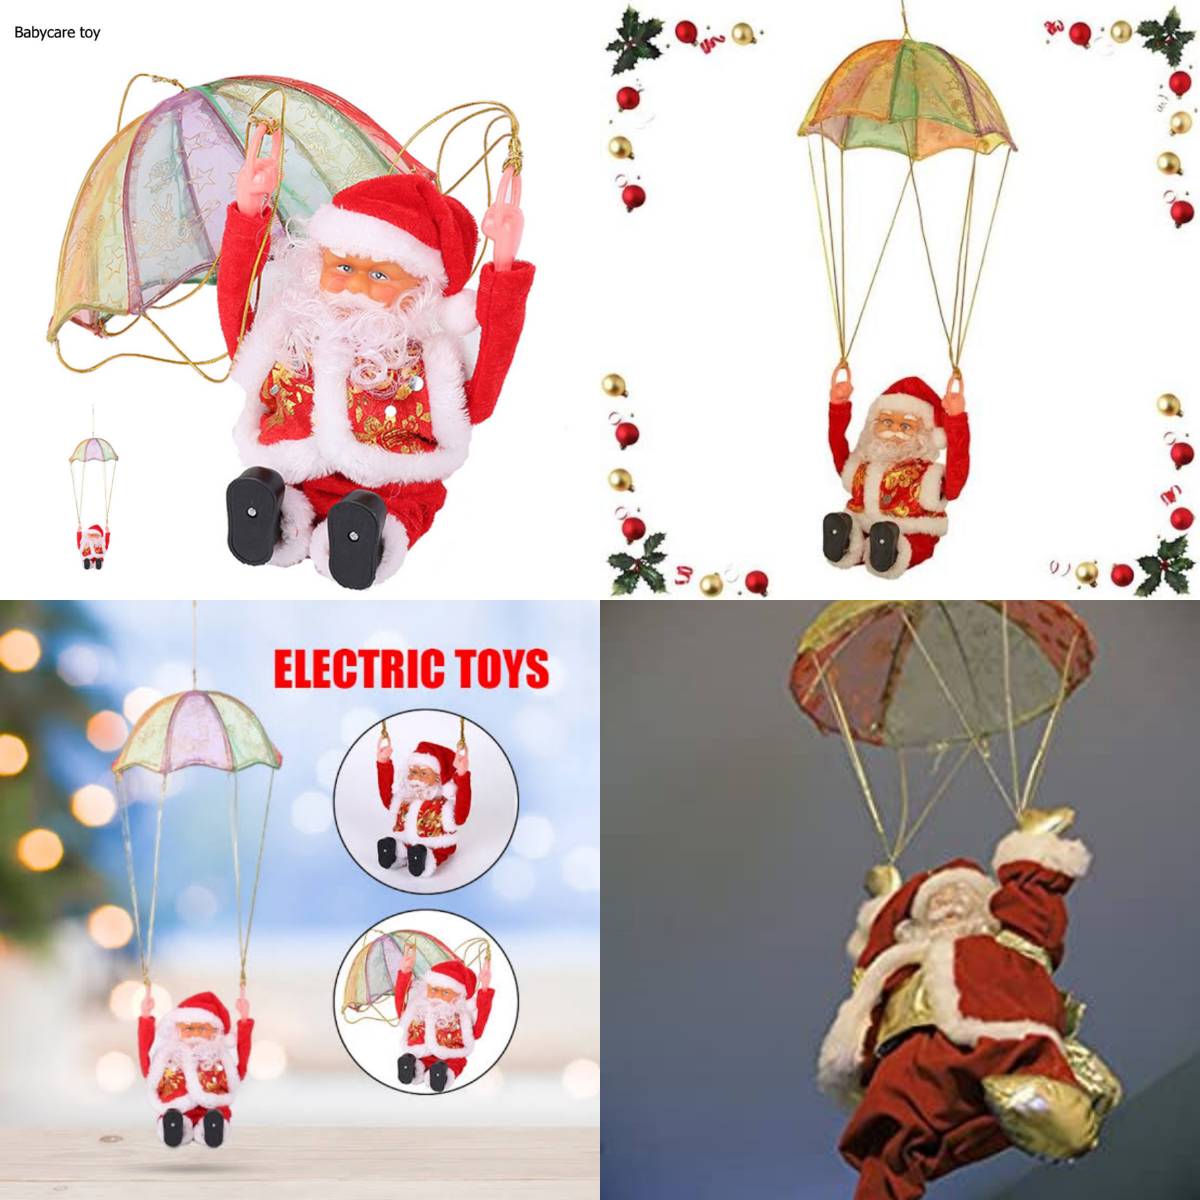 Tumbling Parachute Santa